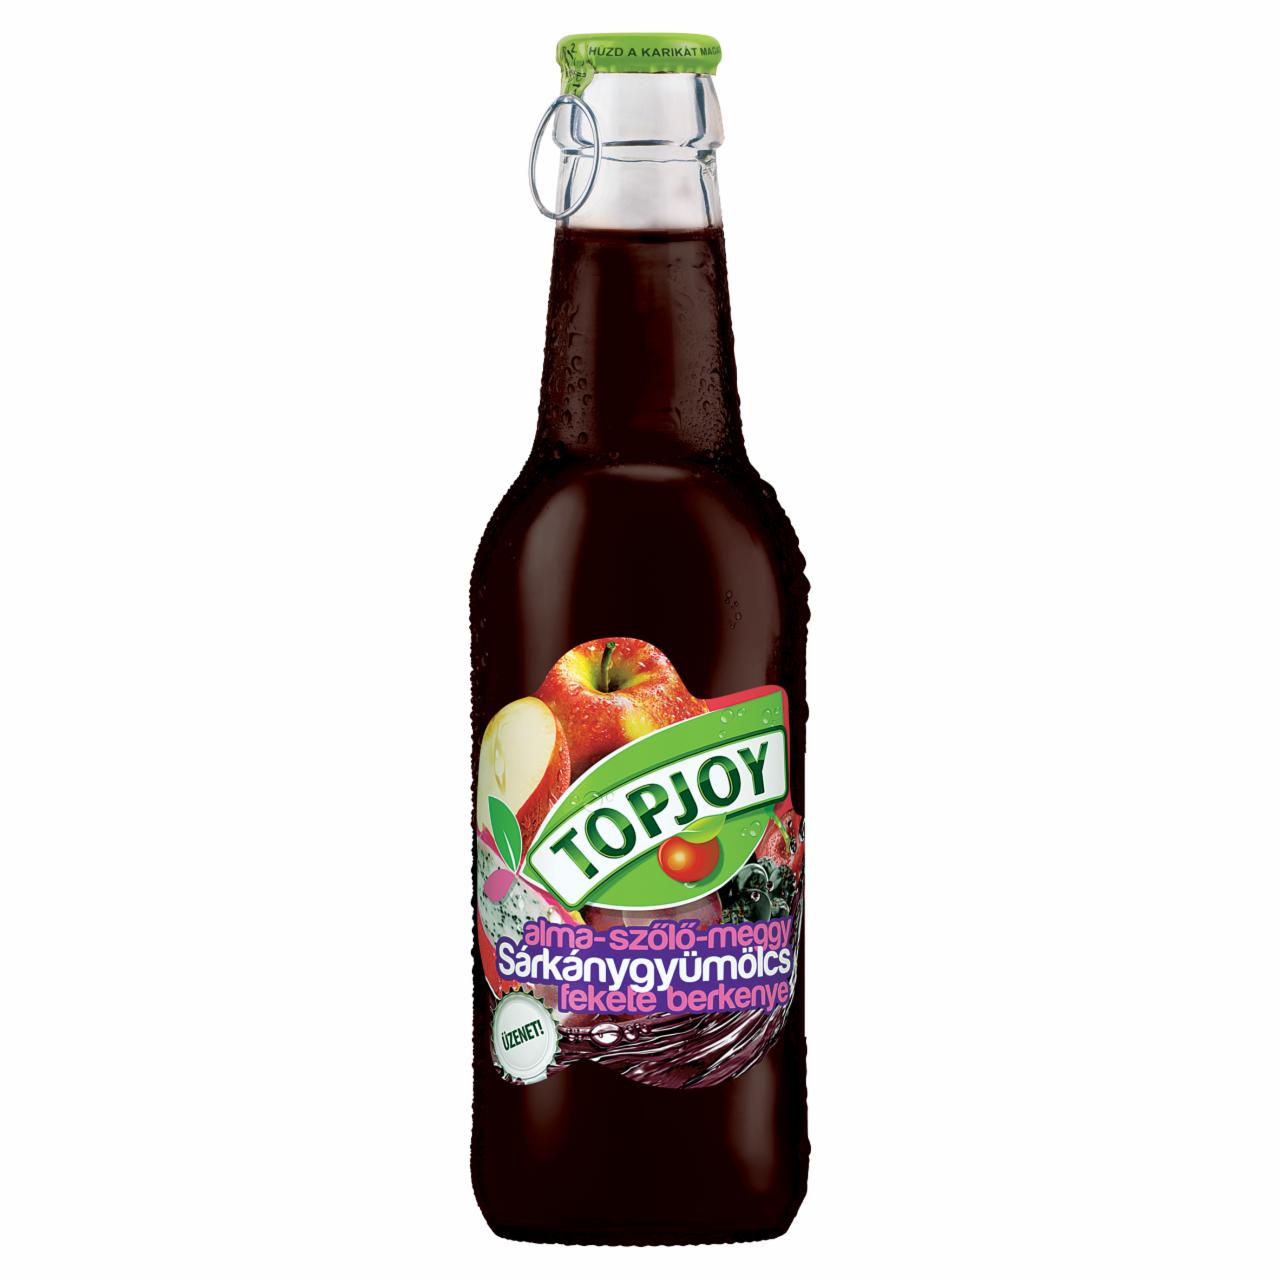 Képek - Topjoy alma-szőlő-meggy-sárkánygyümölcs-fekete berkenye ital 250 ml